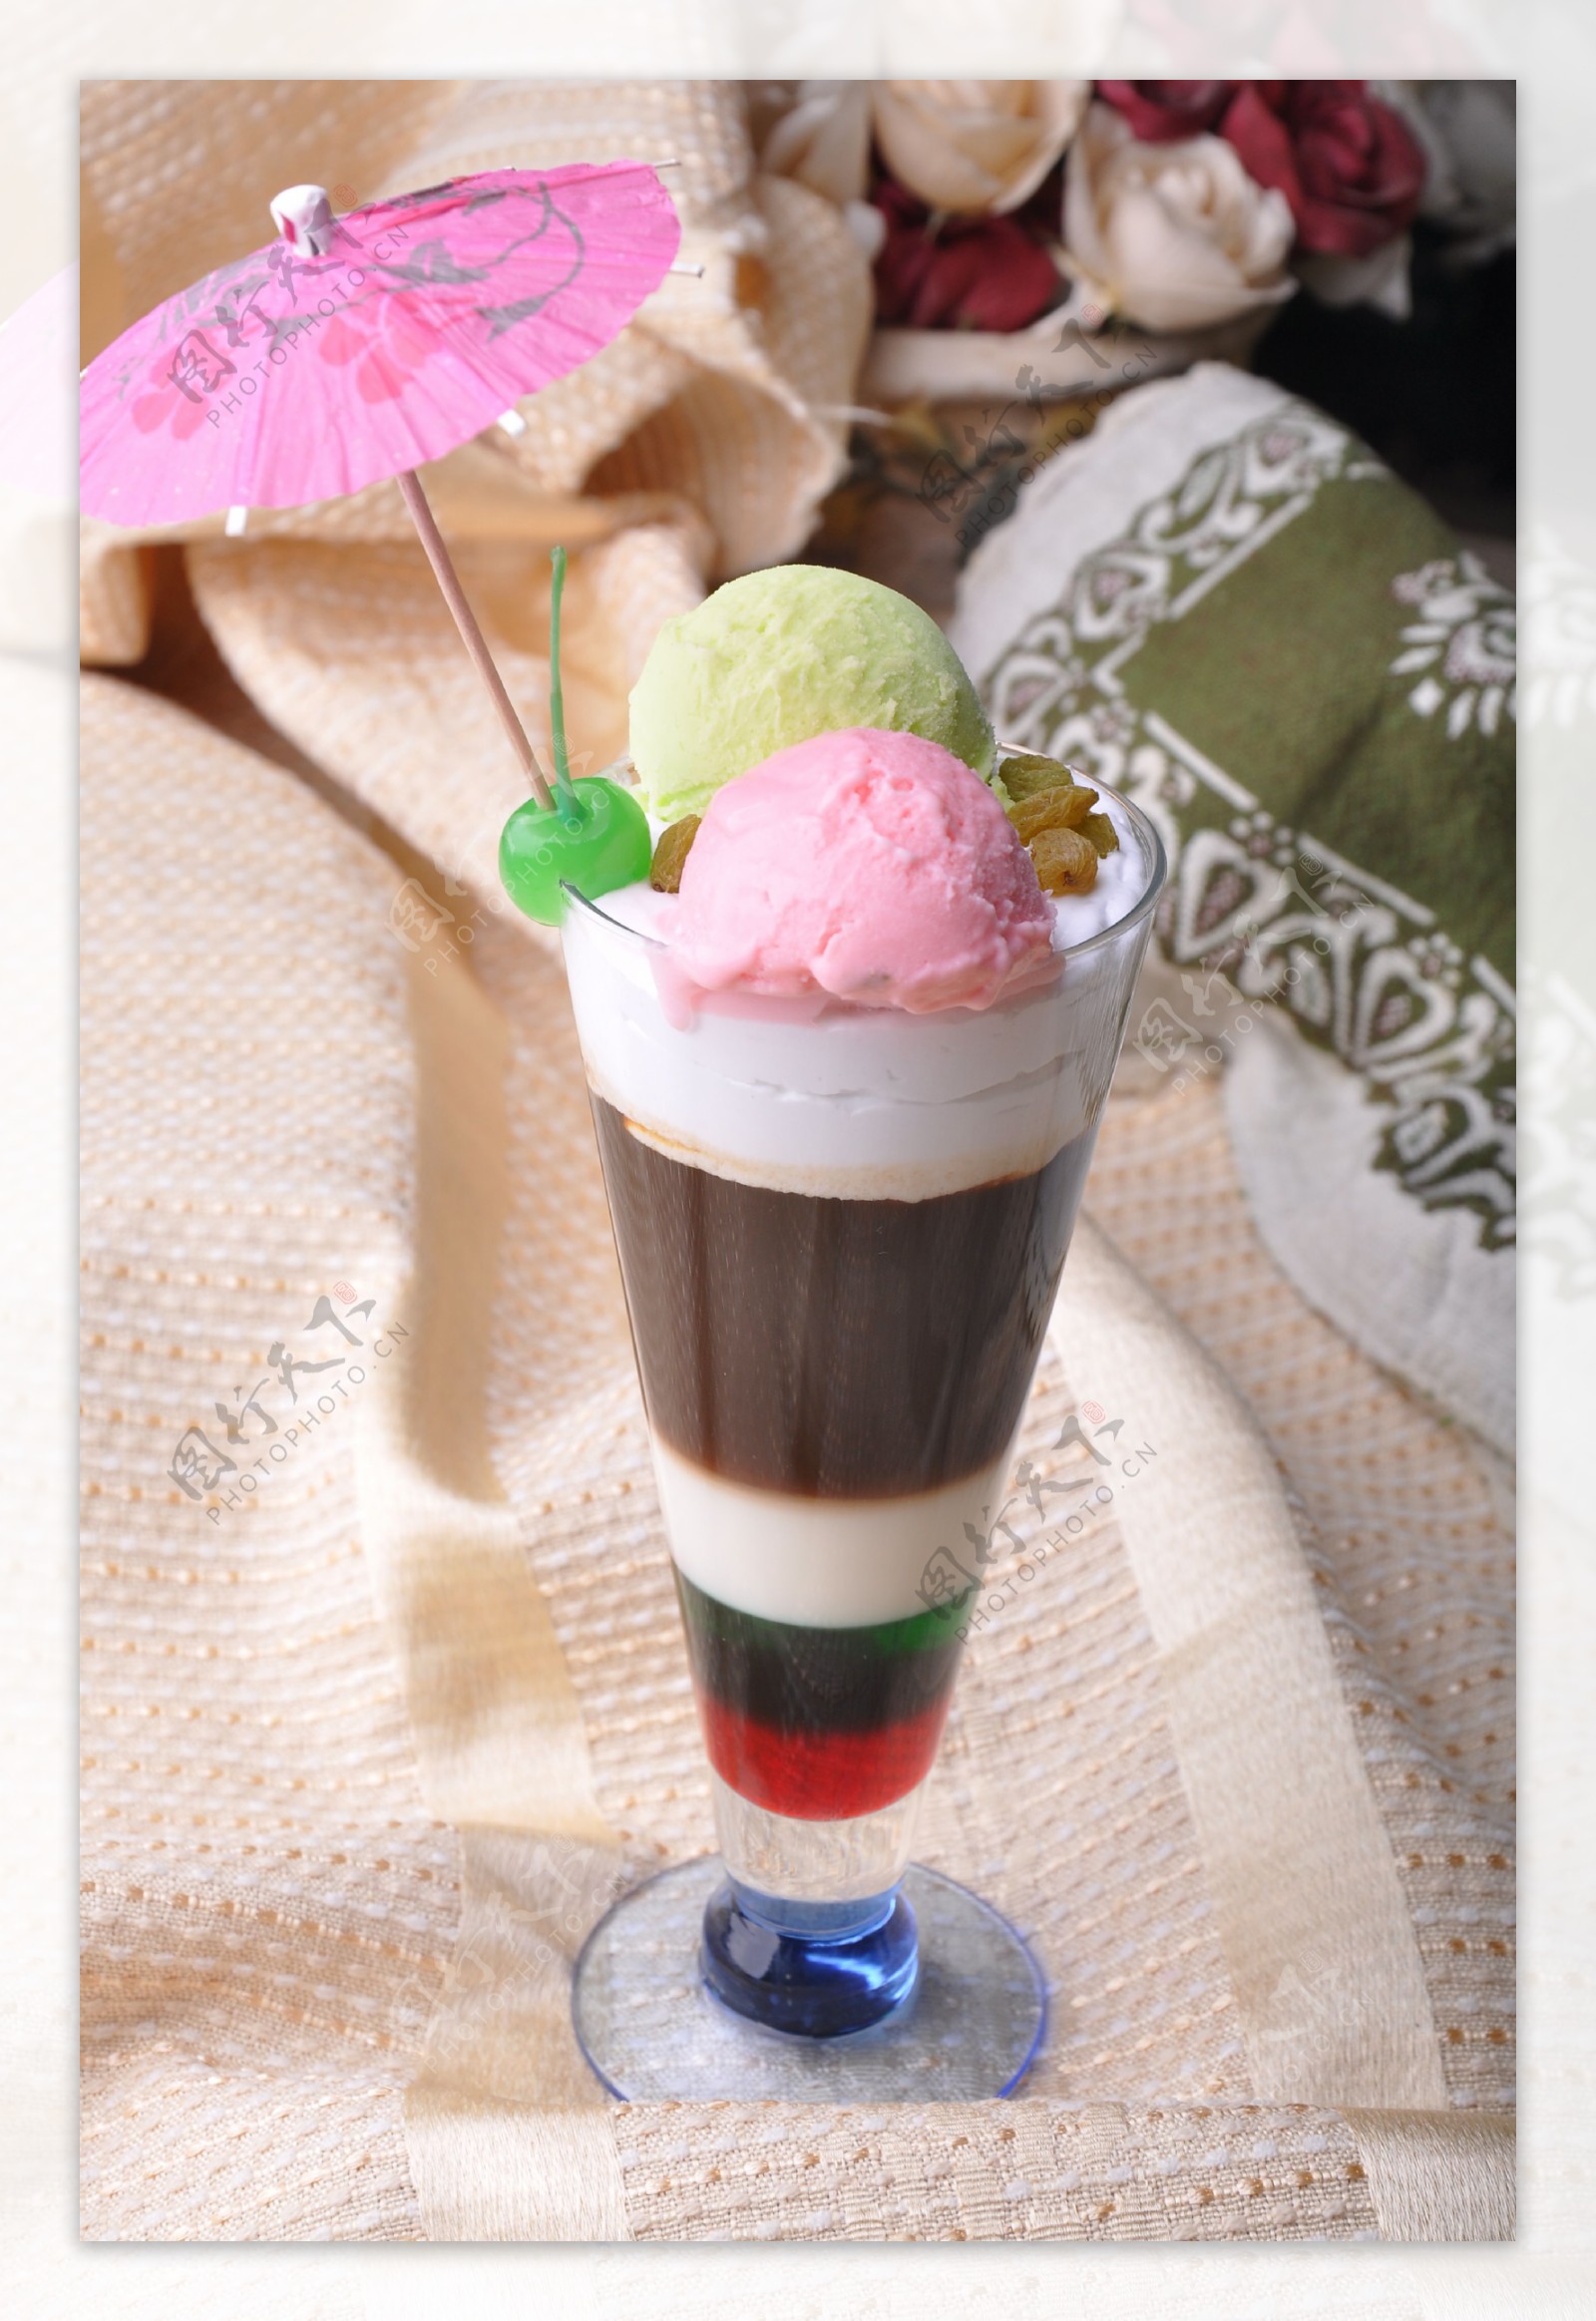 彩虹冰淇淋咖啡图片